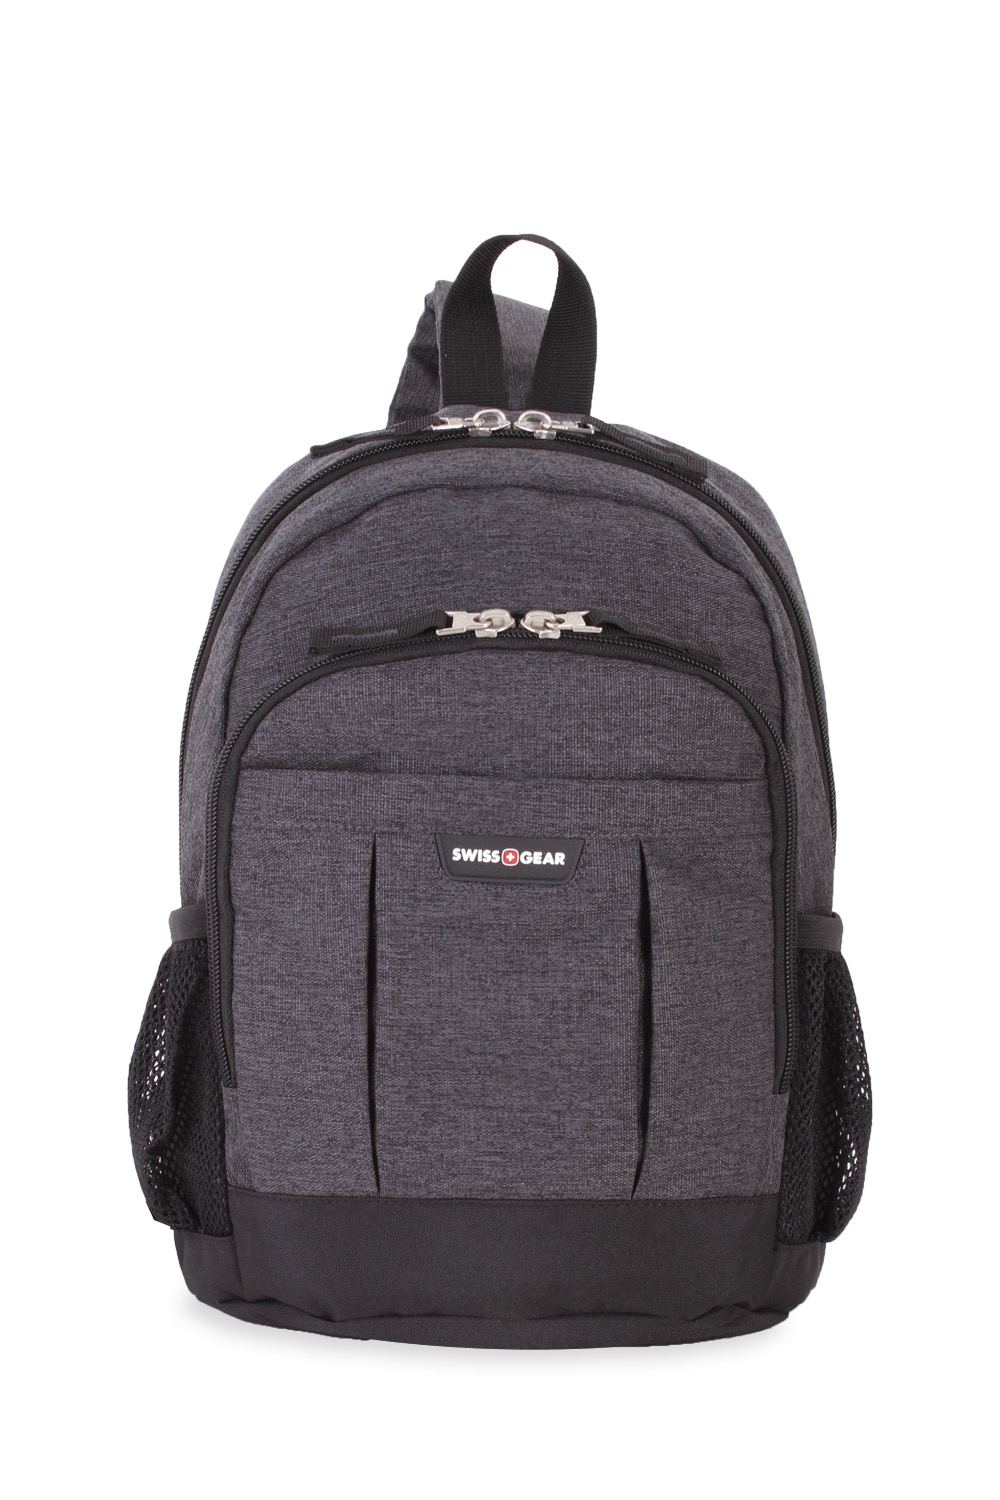 Swissgear 5888 ScanSmart Laptop Backpack